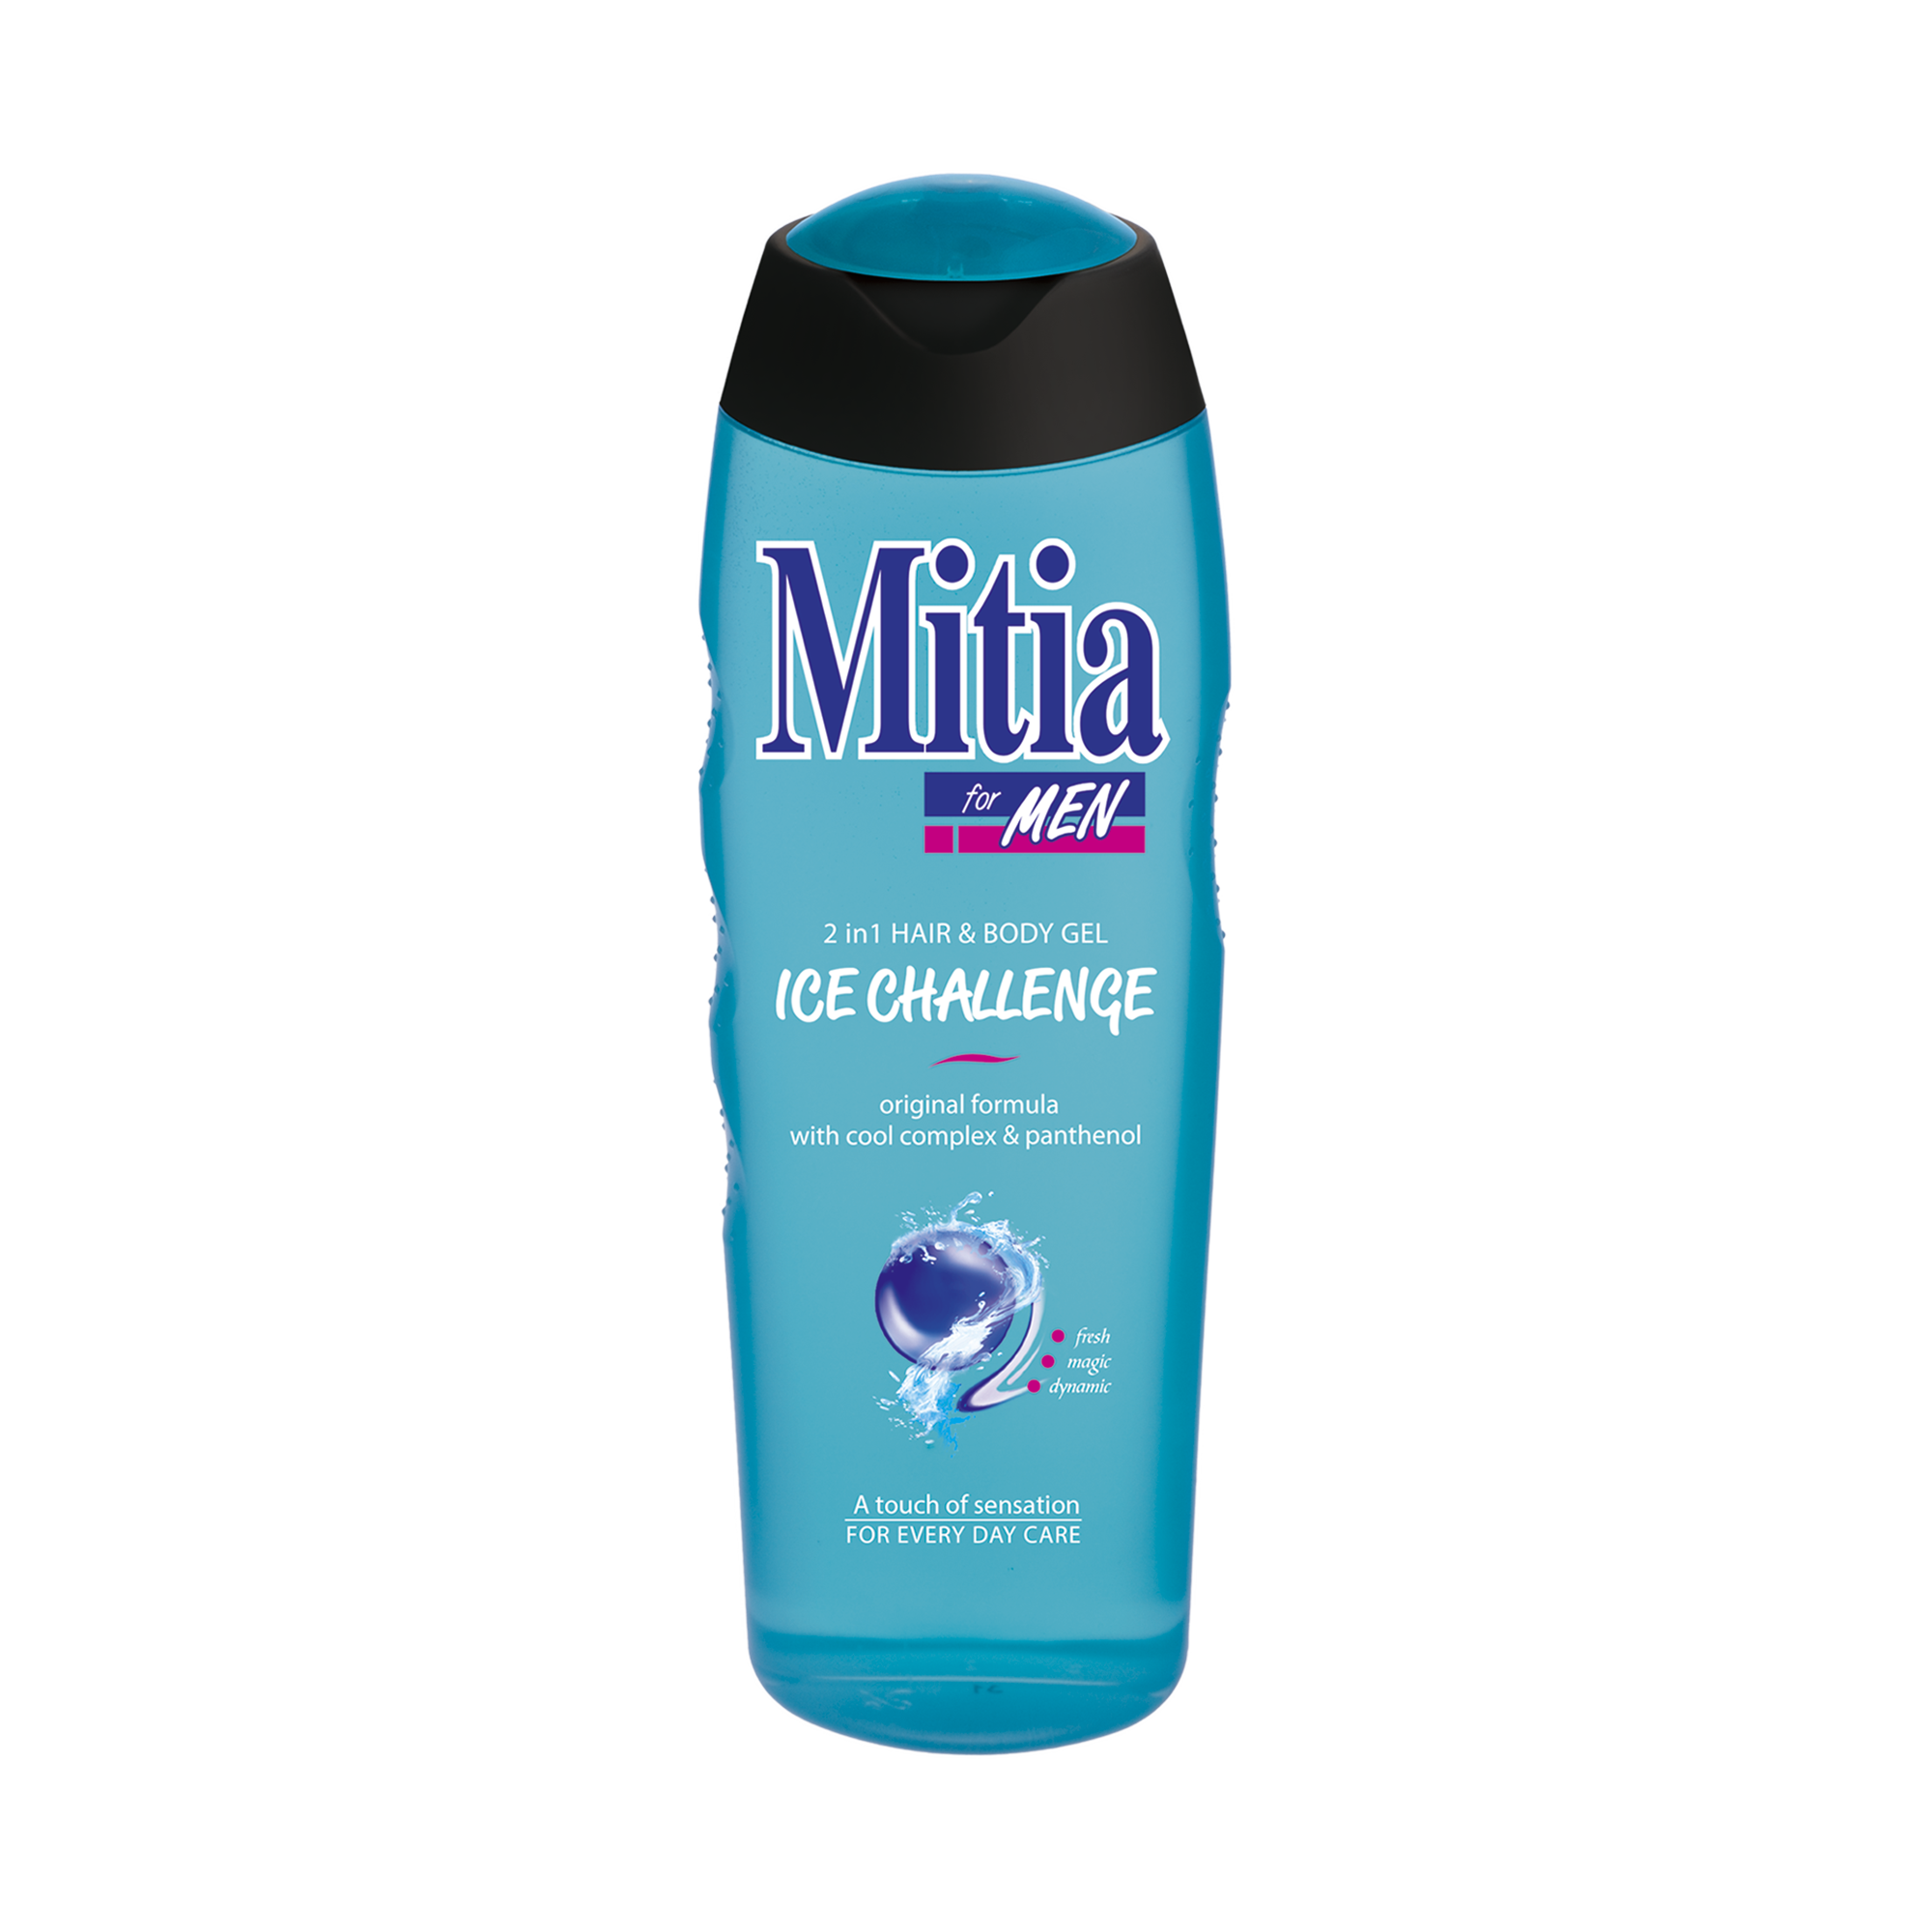 Mitia FOR MEN Ice Challenge shower gel